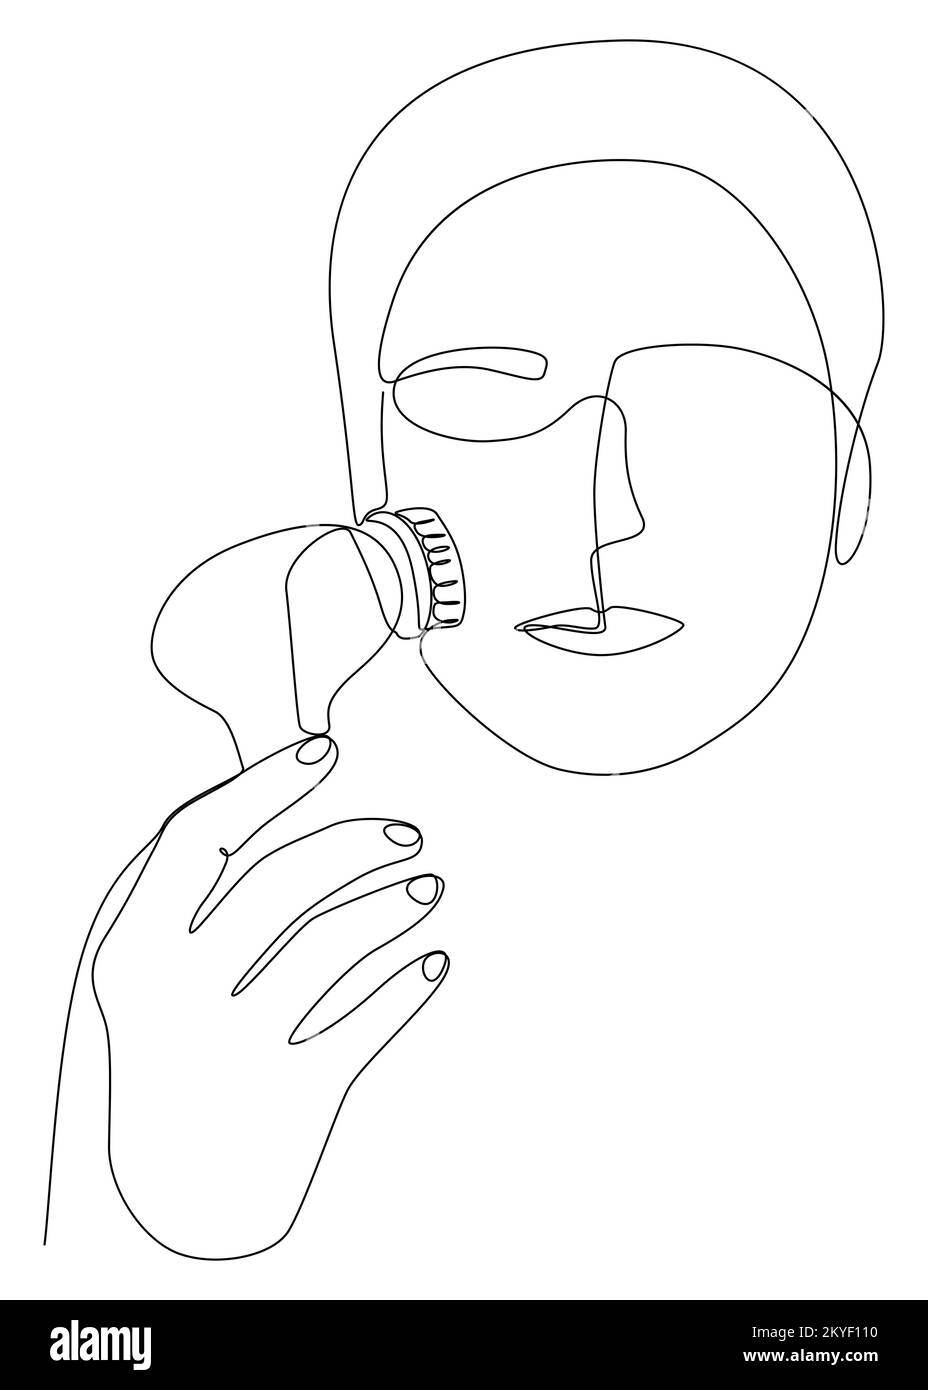 Eine Frau, die sich fortlaufend mit einer Bürste reinigt, ihr Gesicht schrubbt und massiert. Vektorkonzept zur Darstellung dünner Linien. Kontur Zeichnen kreativer Ideen. Stock Vektor